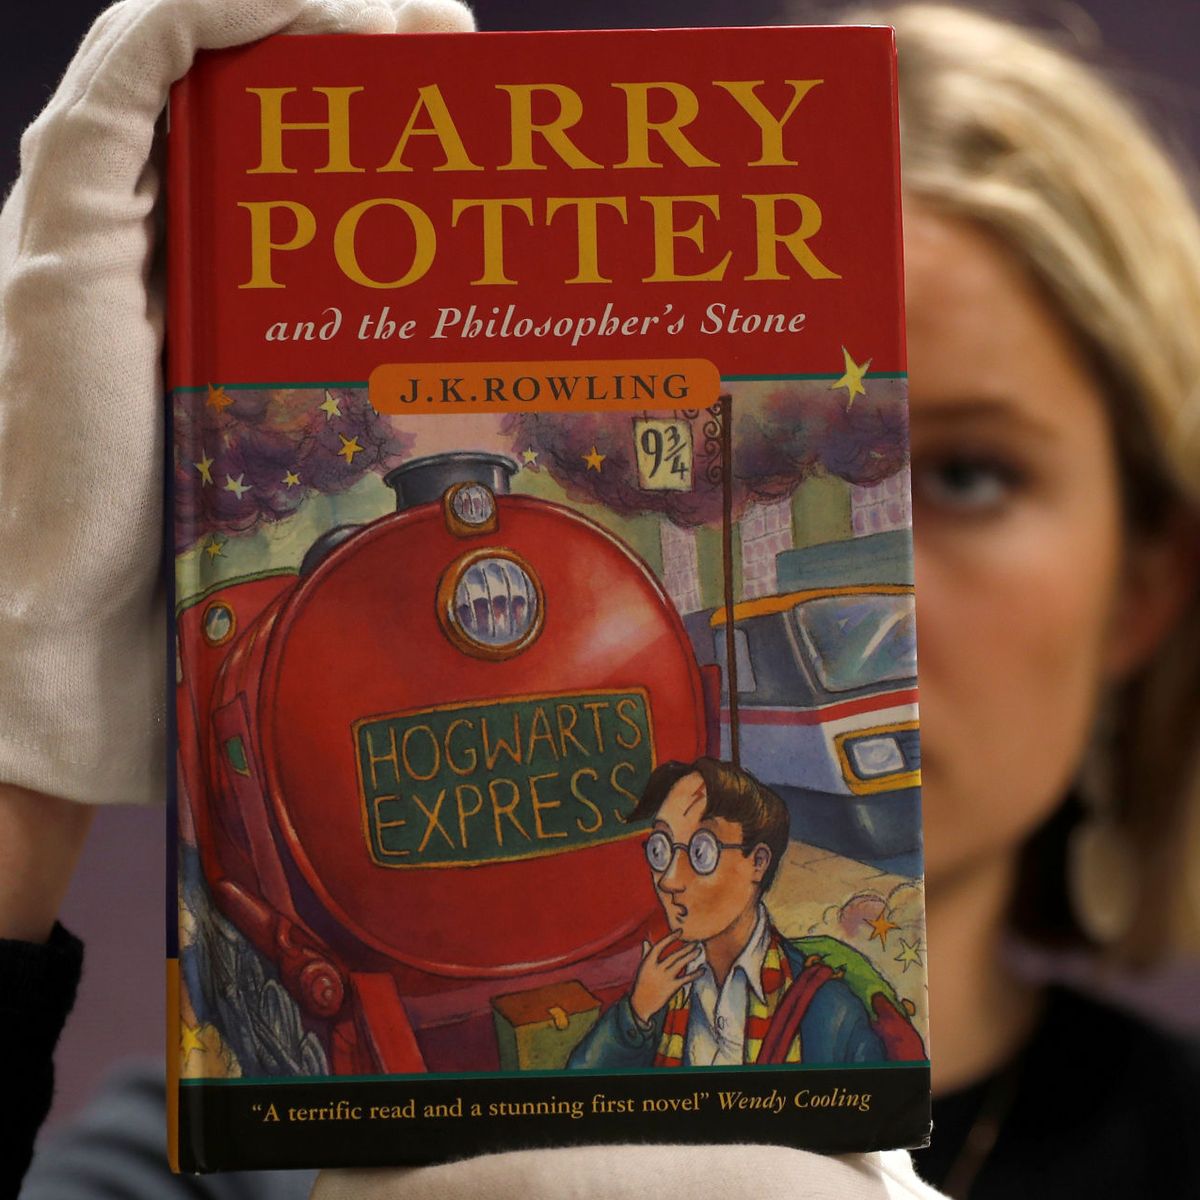 Si tienes esta edición española de los libros de 'Harry Potter